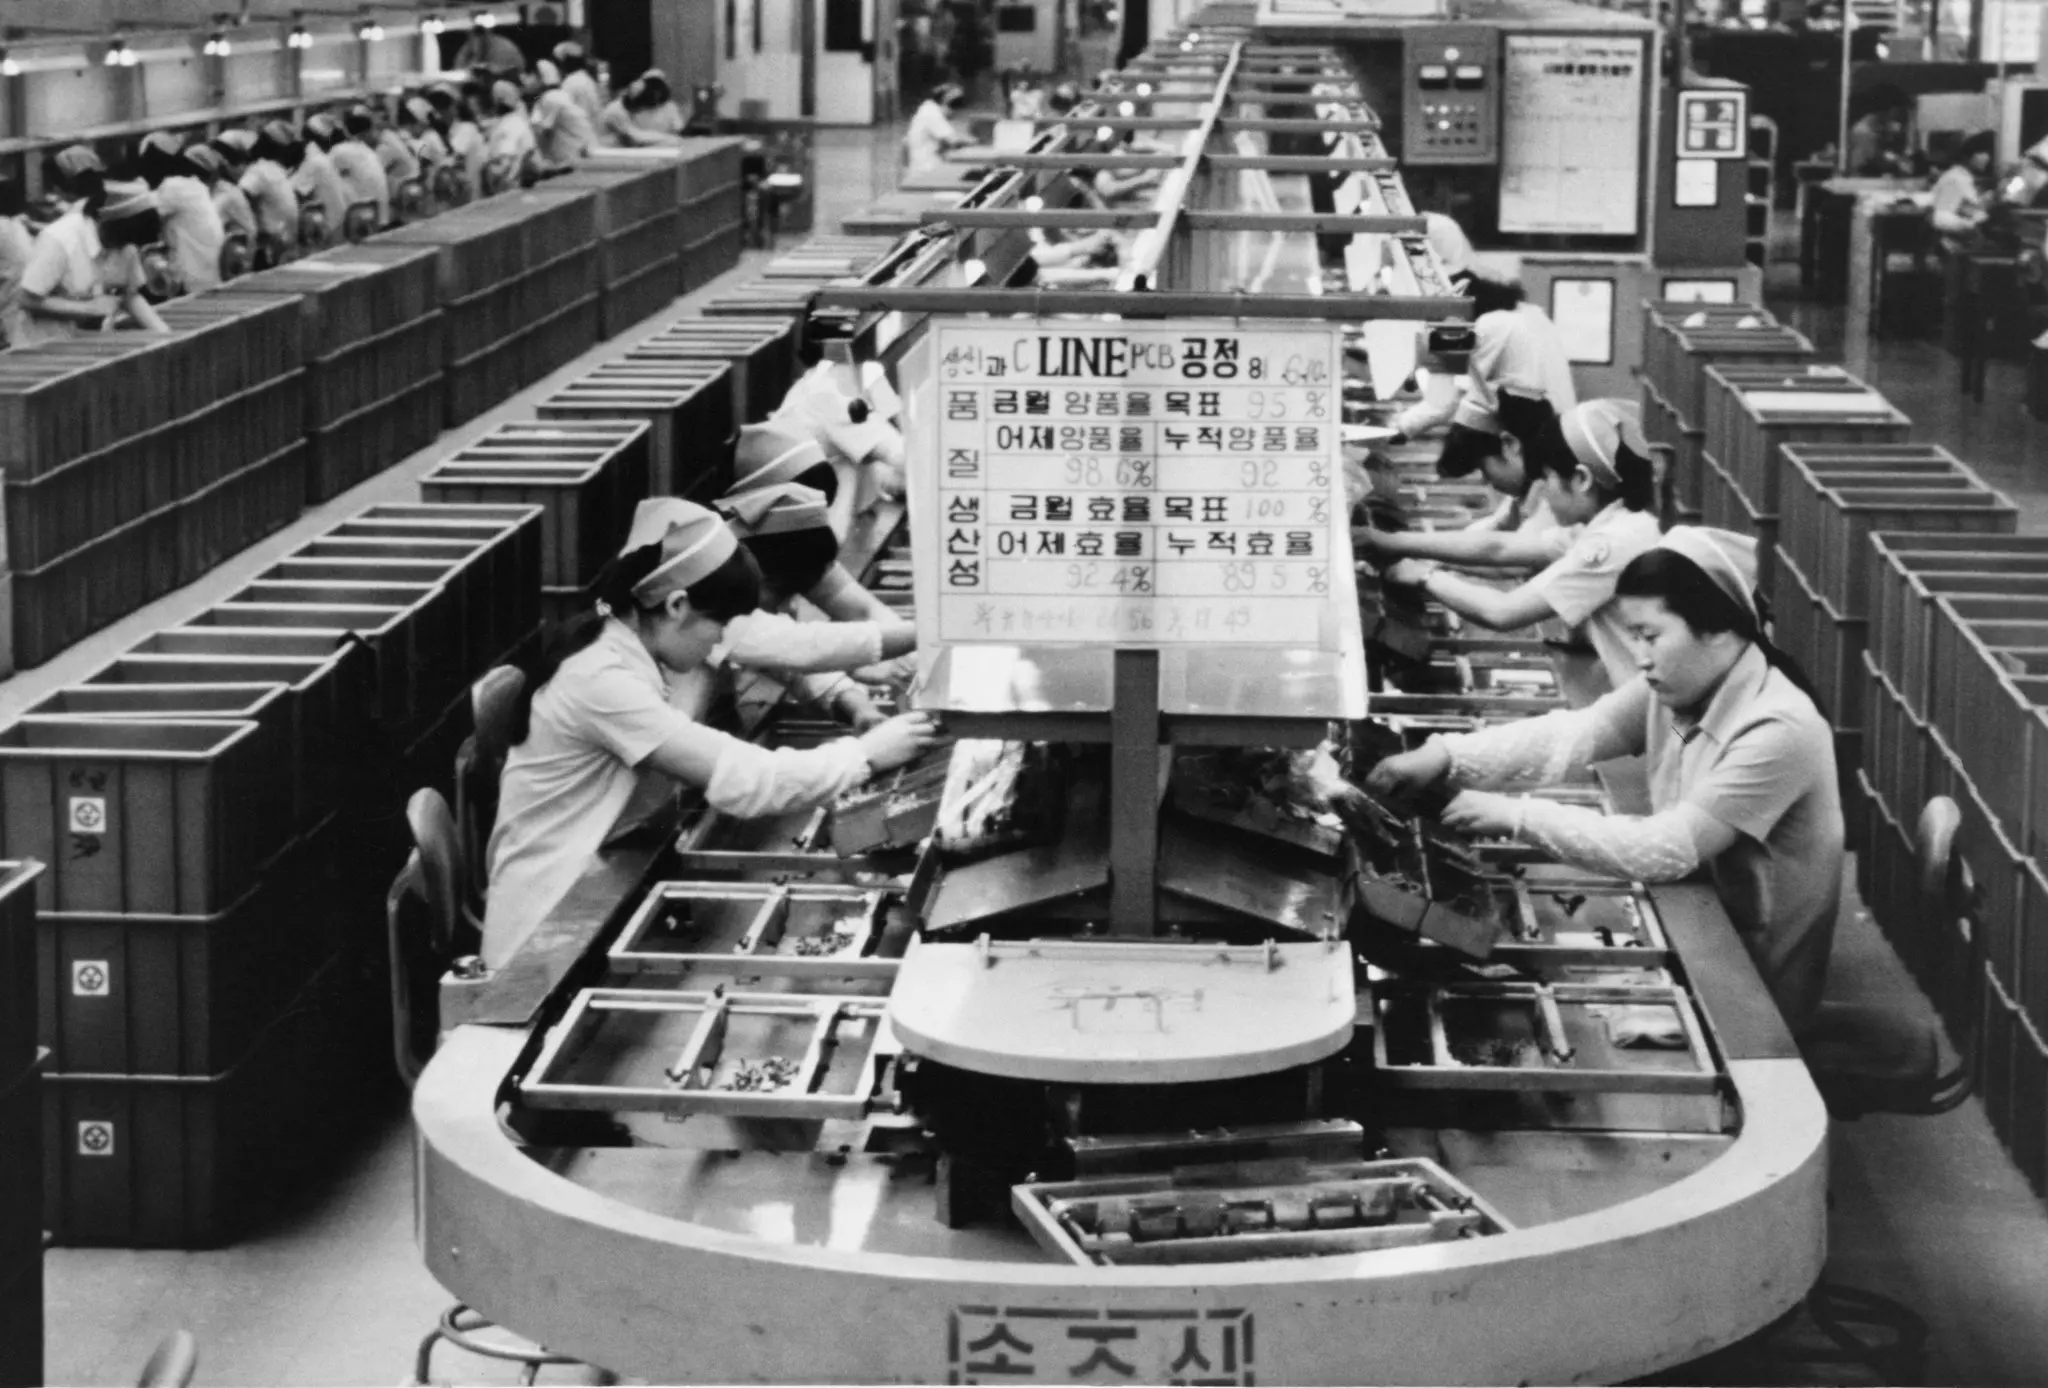 عکس از شرکت سامسونگ سالهای جنگ کره